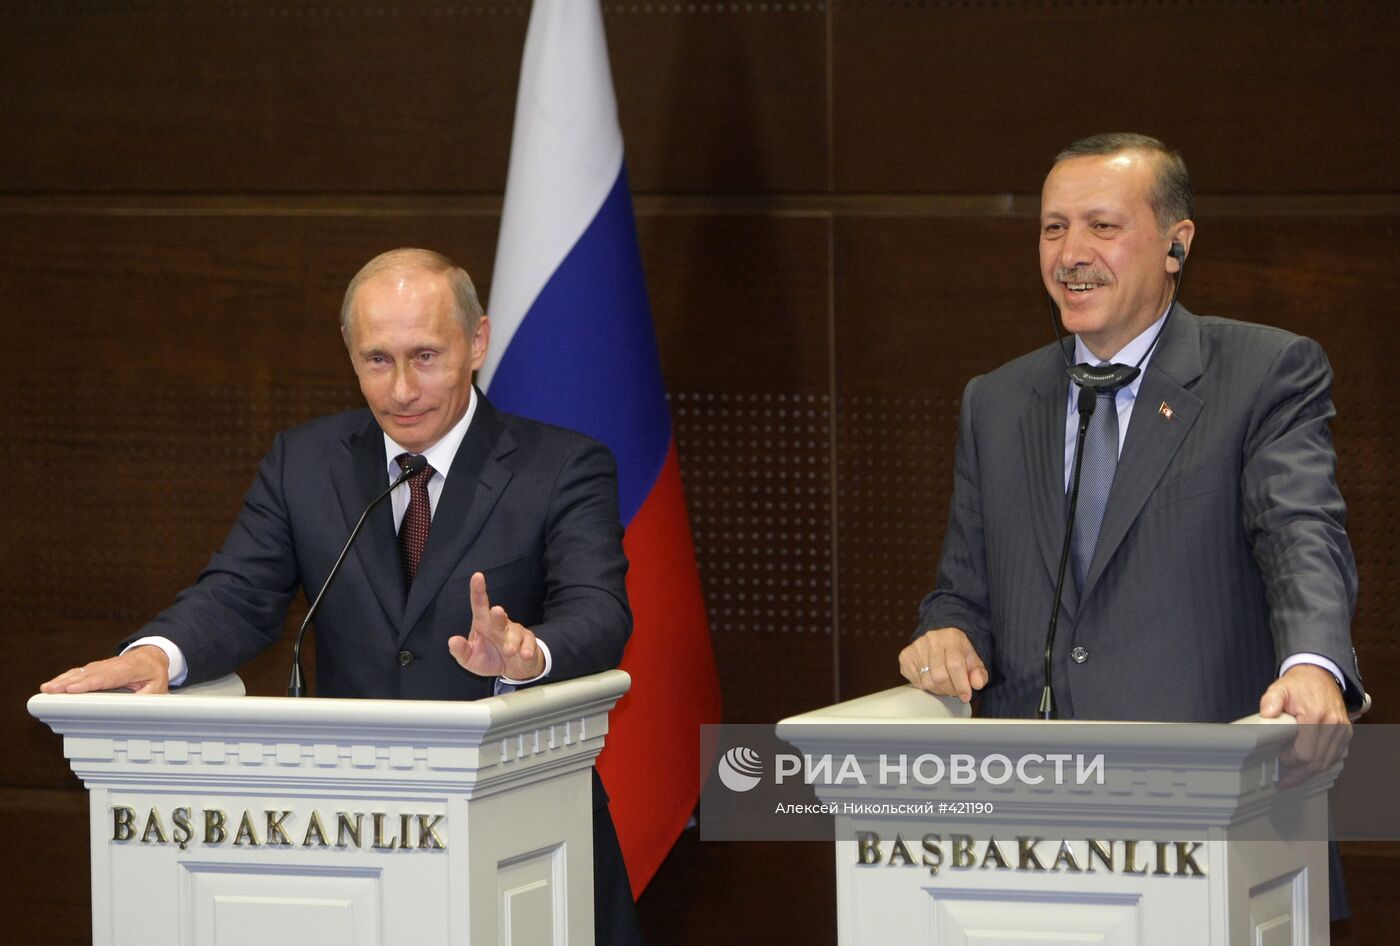 Пресс-конференция В. Путина и Р. Эрдогана